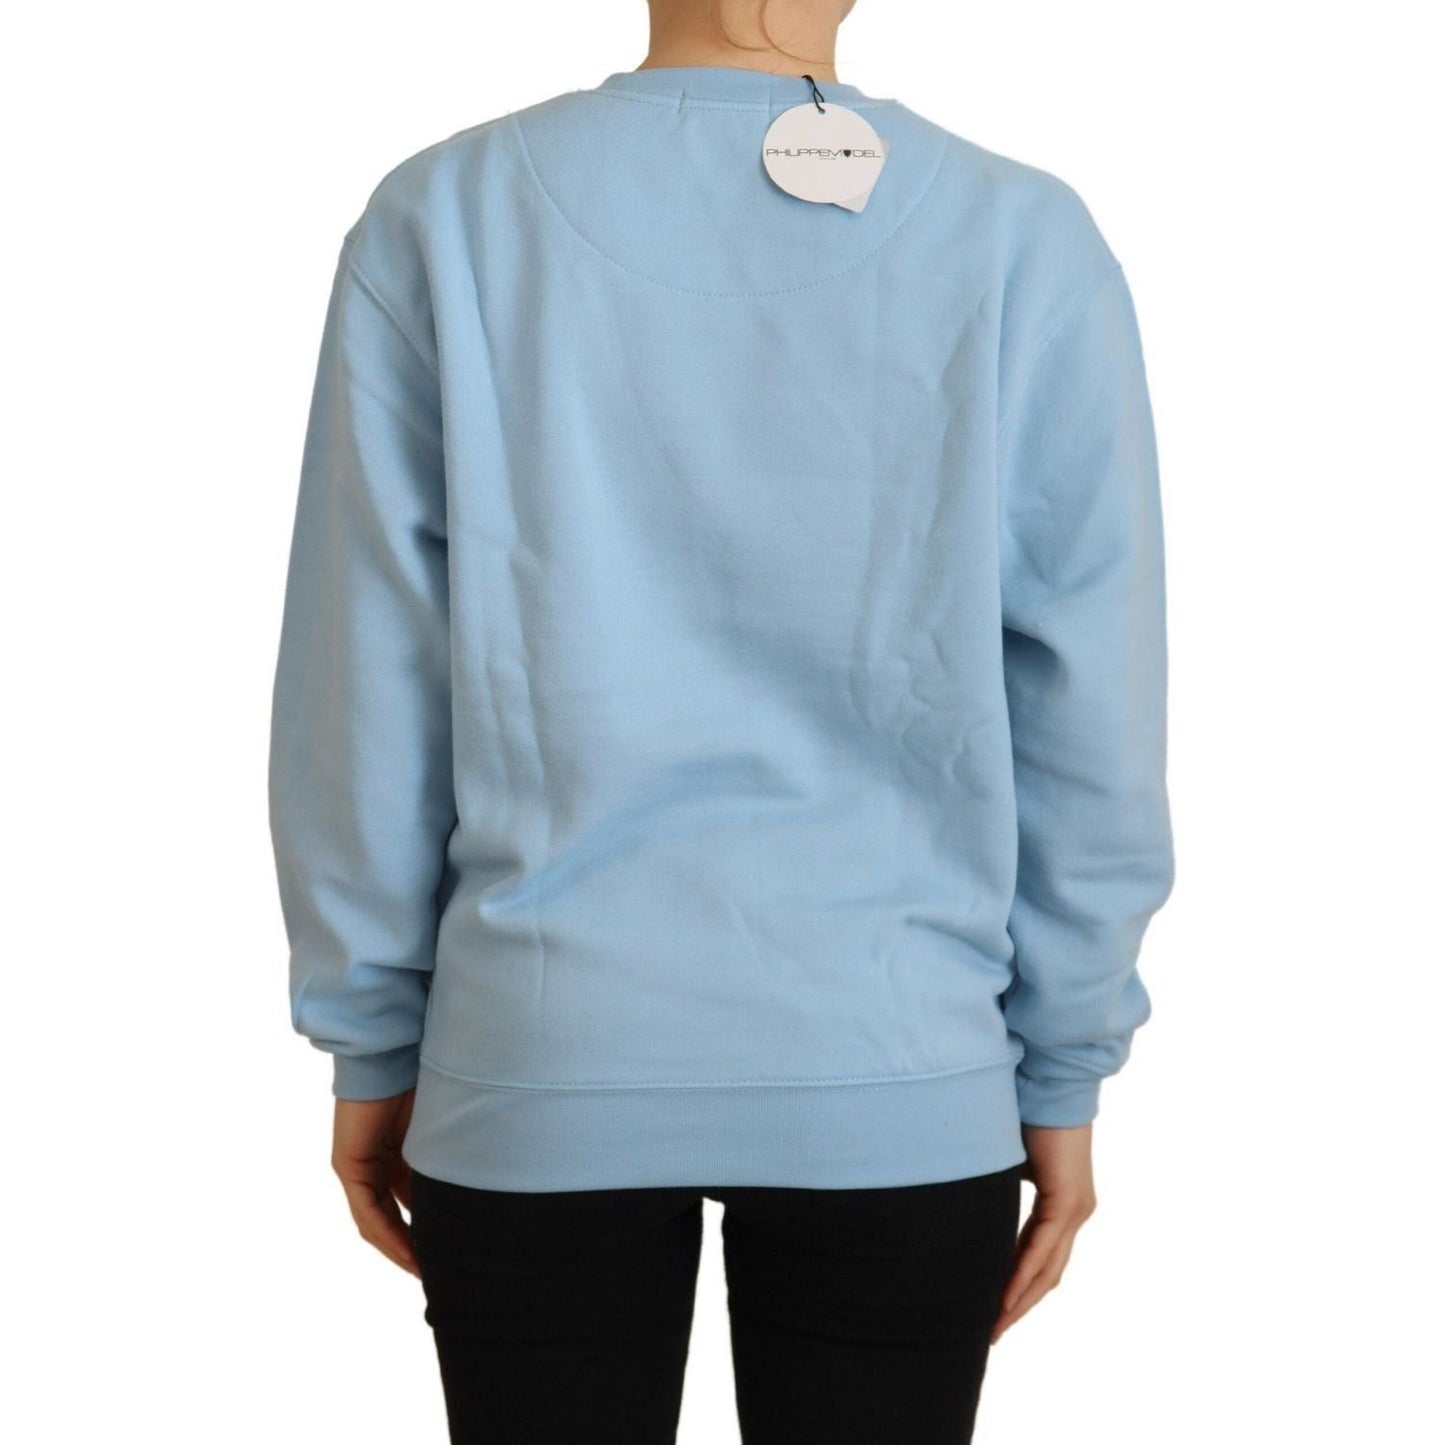 Philippe Model Elegant Light Blue Long Sleeve Sweater light-blue-logo-printed-long-sleeves-sweater-1 IMG_9256-scaled-e010bf49-0c8.jpg